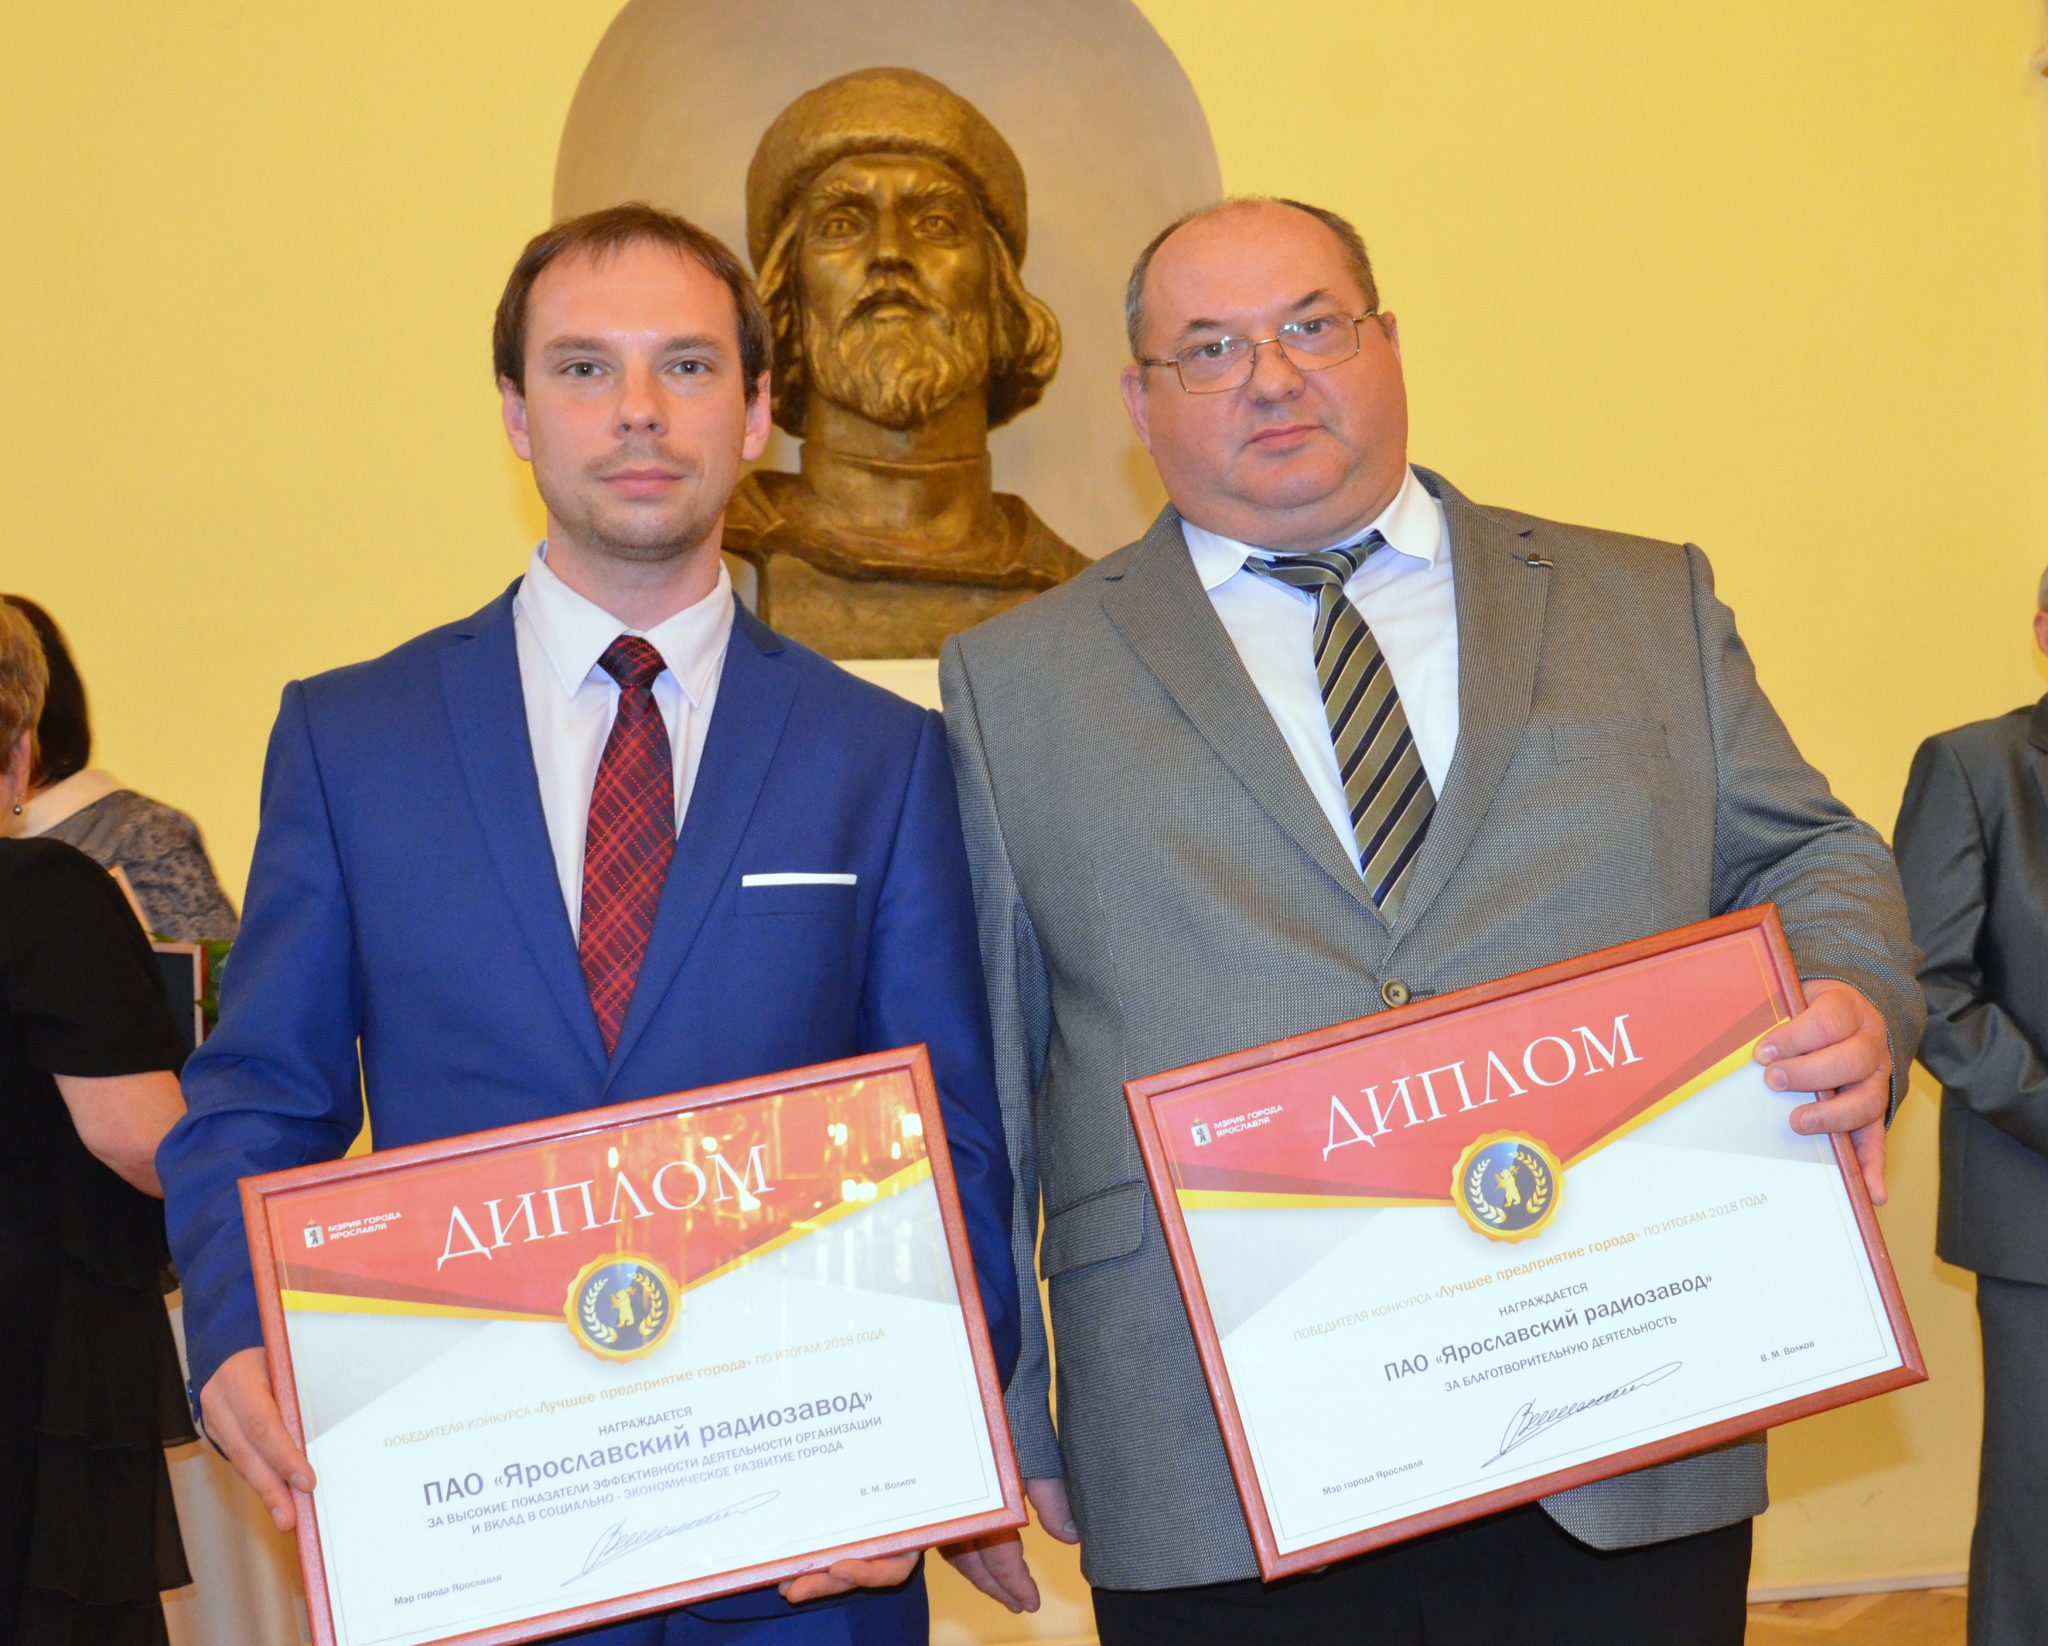 Ярославскому радиозаводу вручен диплом победителя